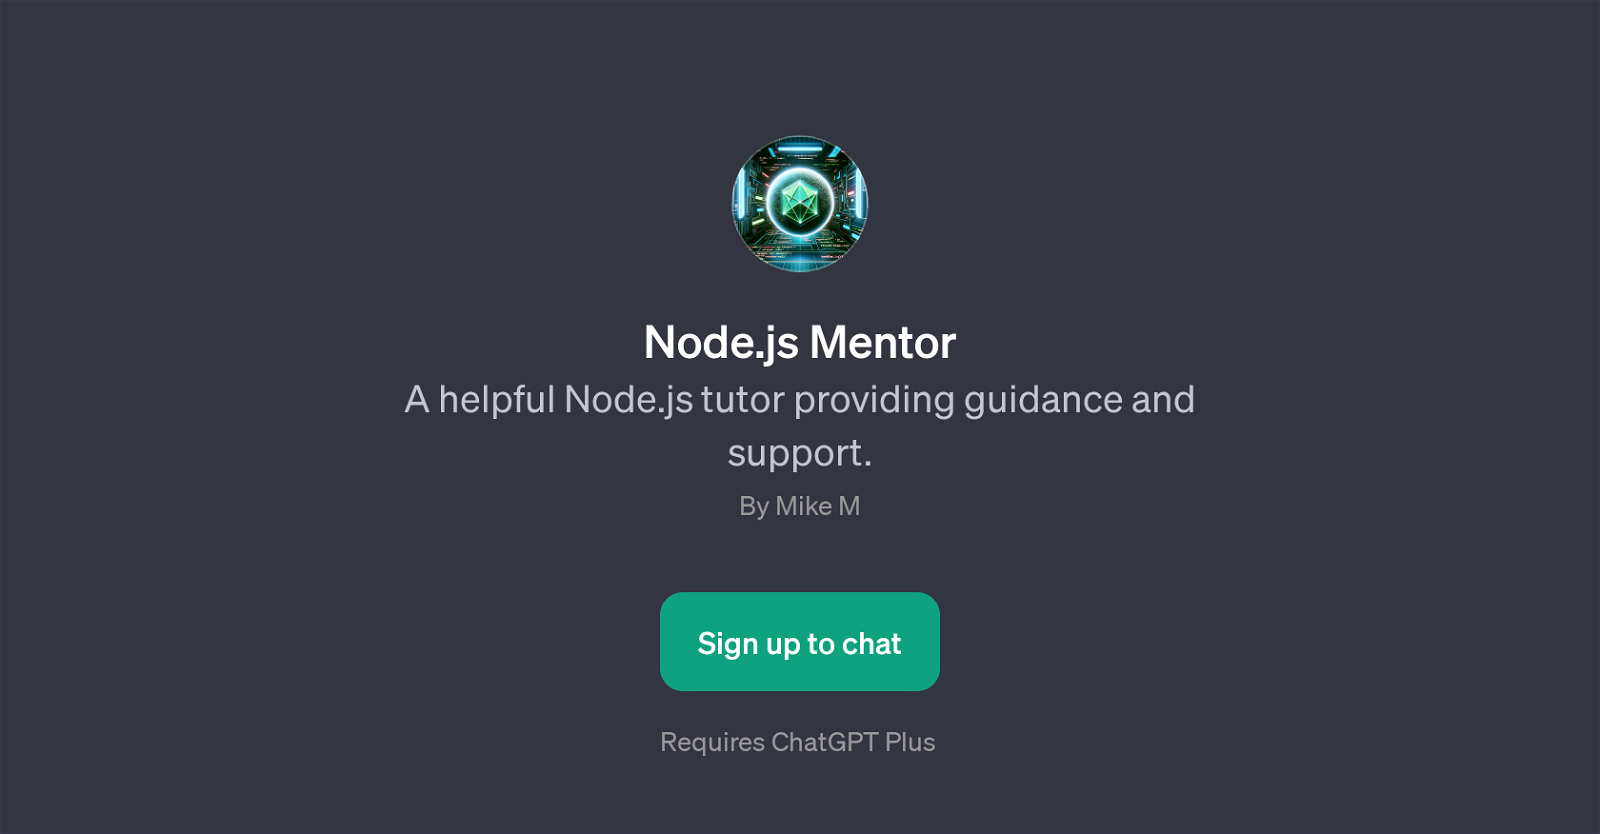 Node.js Mentor website